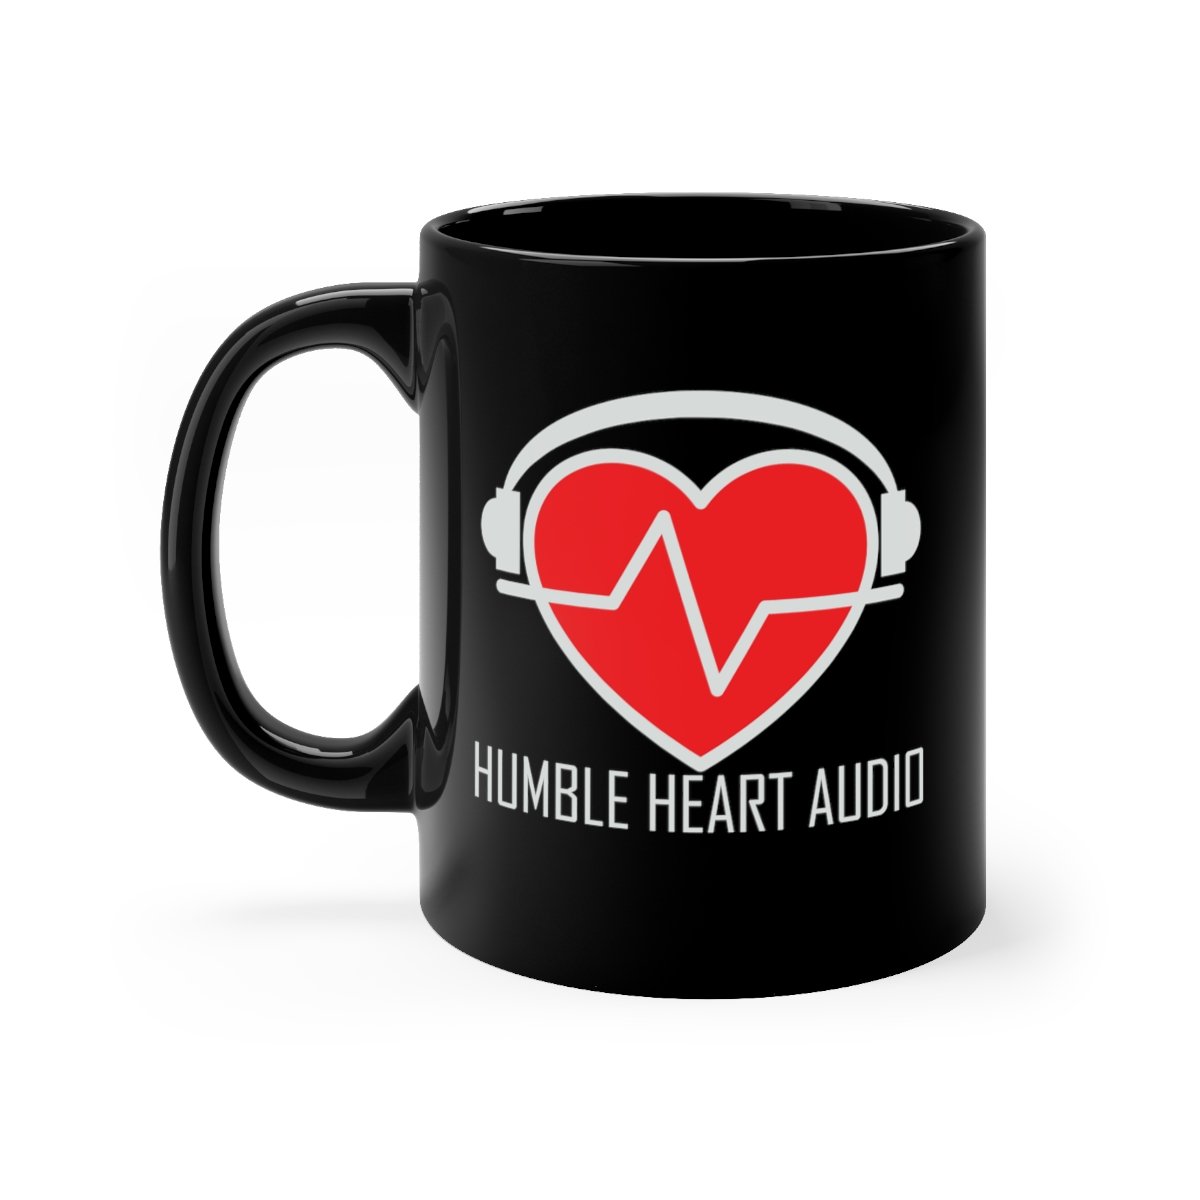 Humble Heart Audio Black mug 11oz